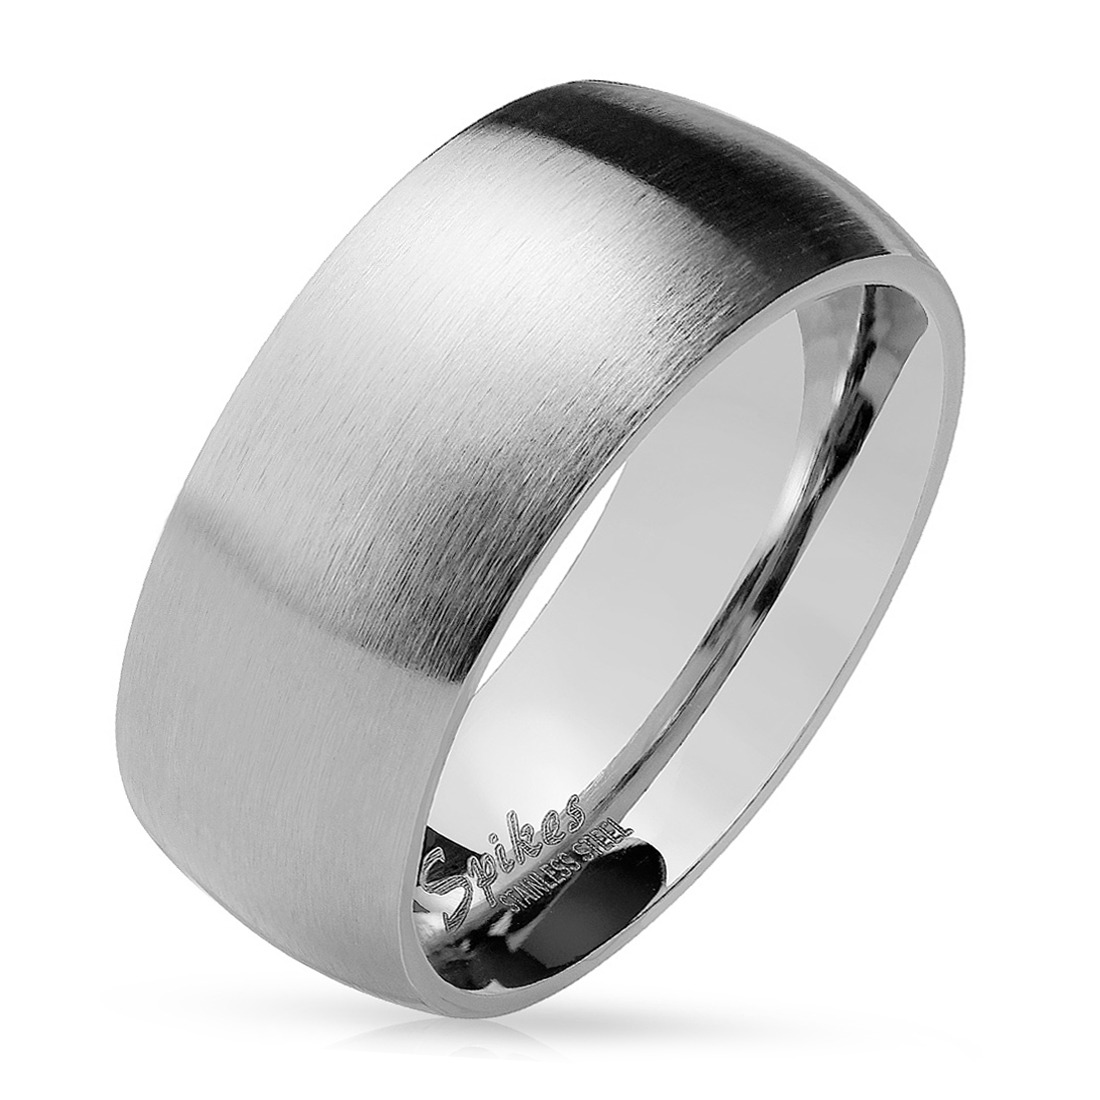 Šperky4U OPR0028 Ocelový prsten matný, šíře 8 mm - velikost 65 - OPR0028-8-65